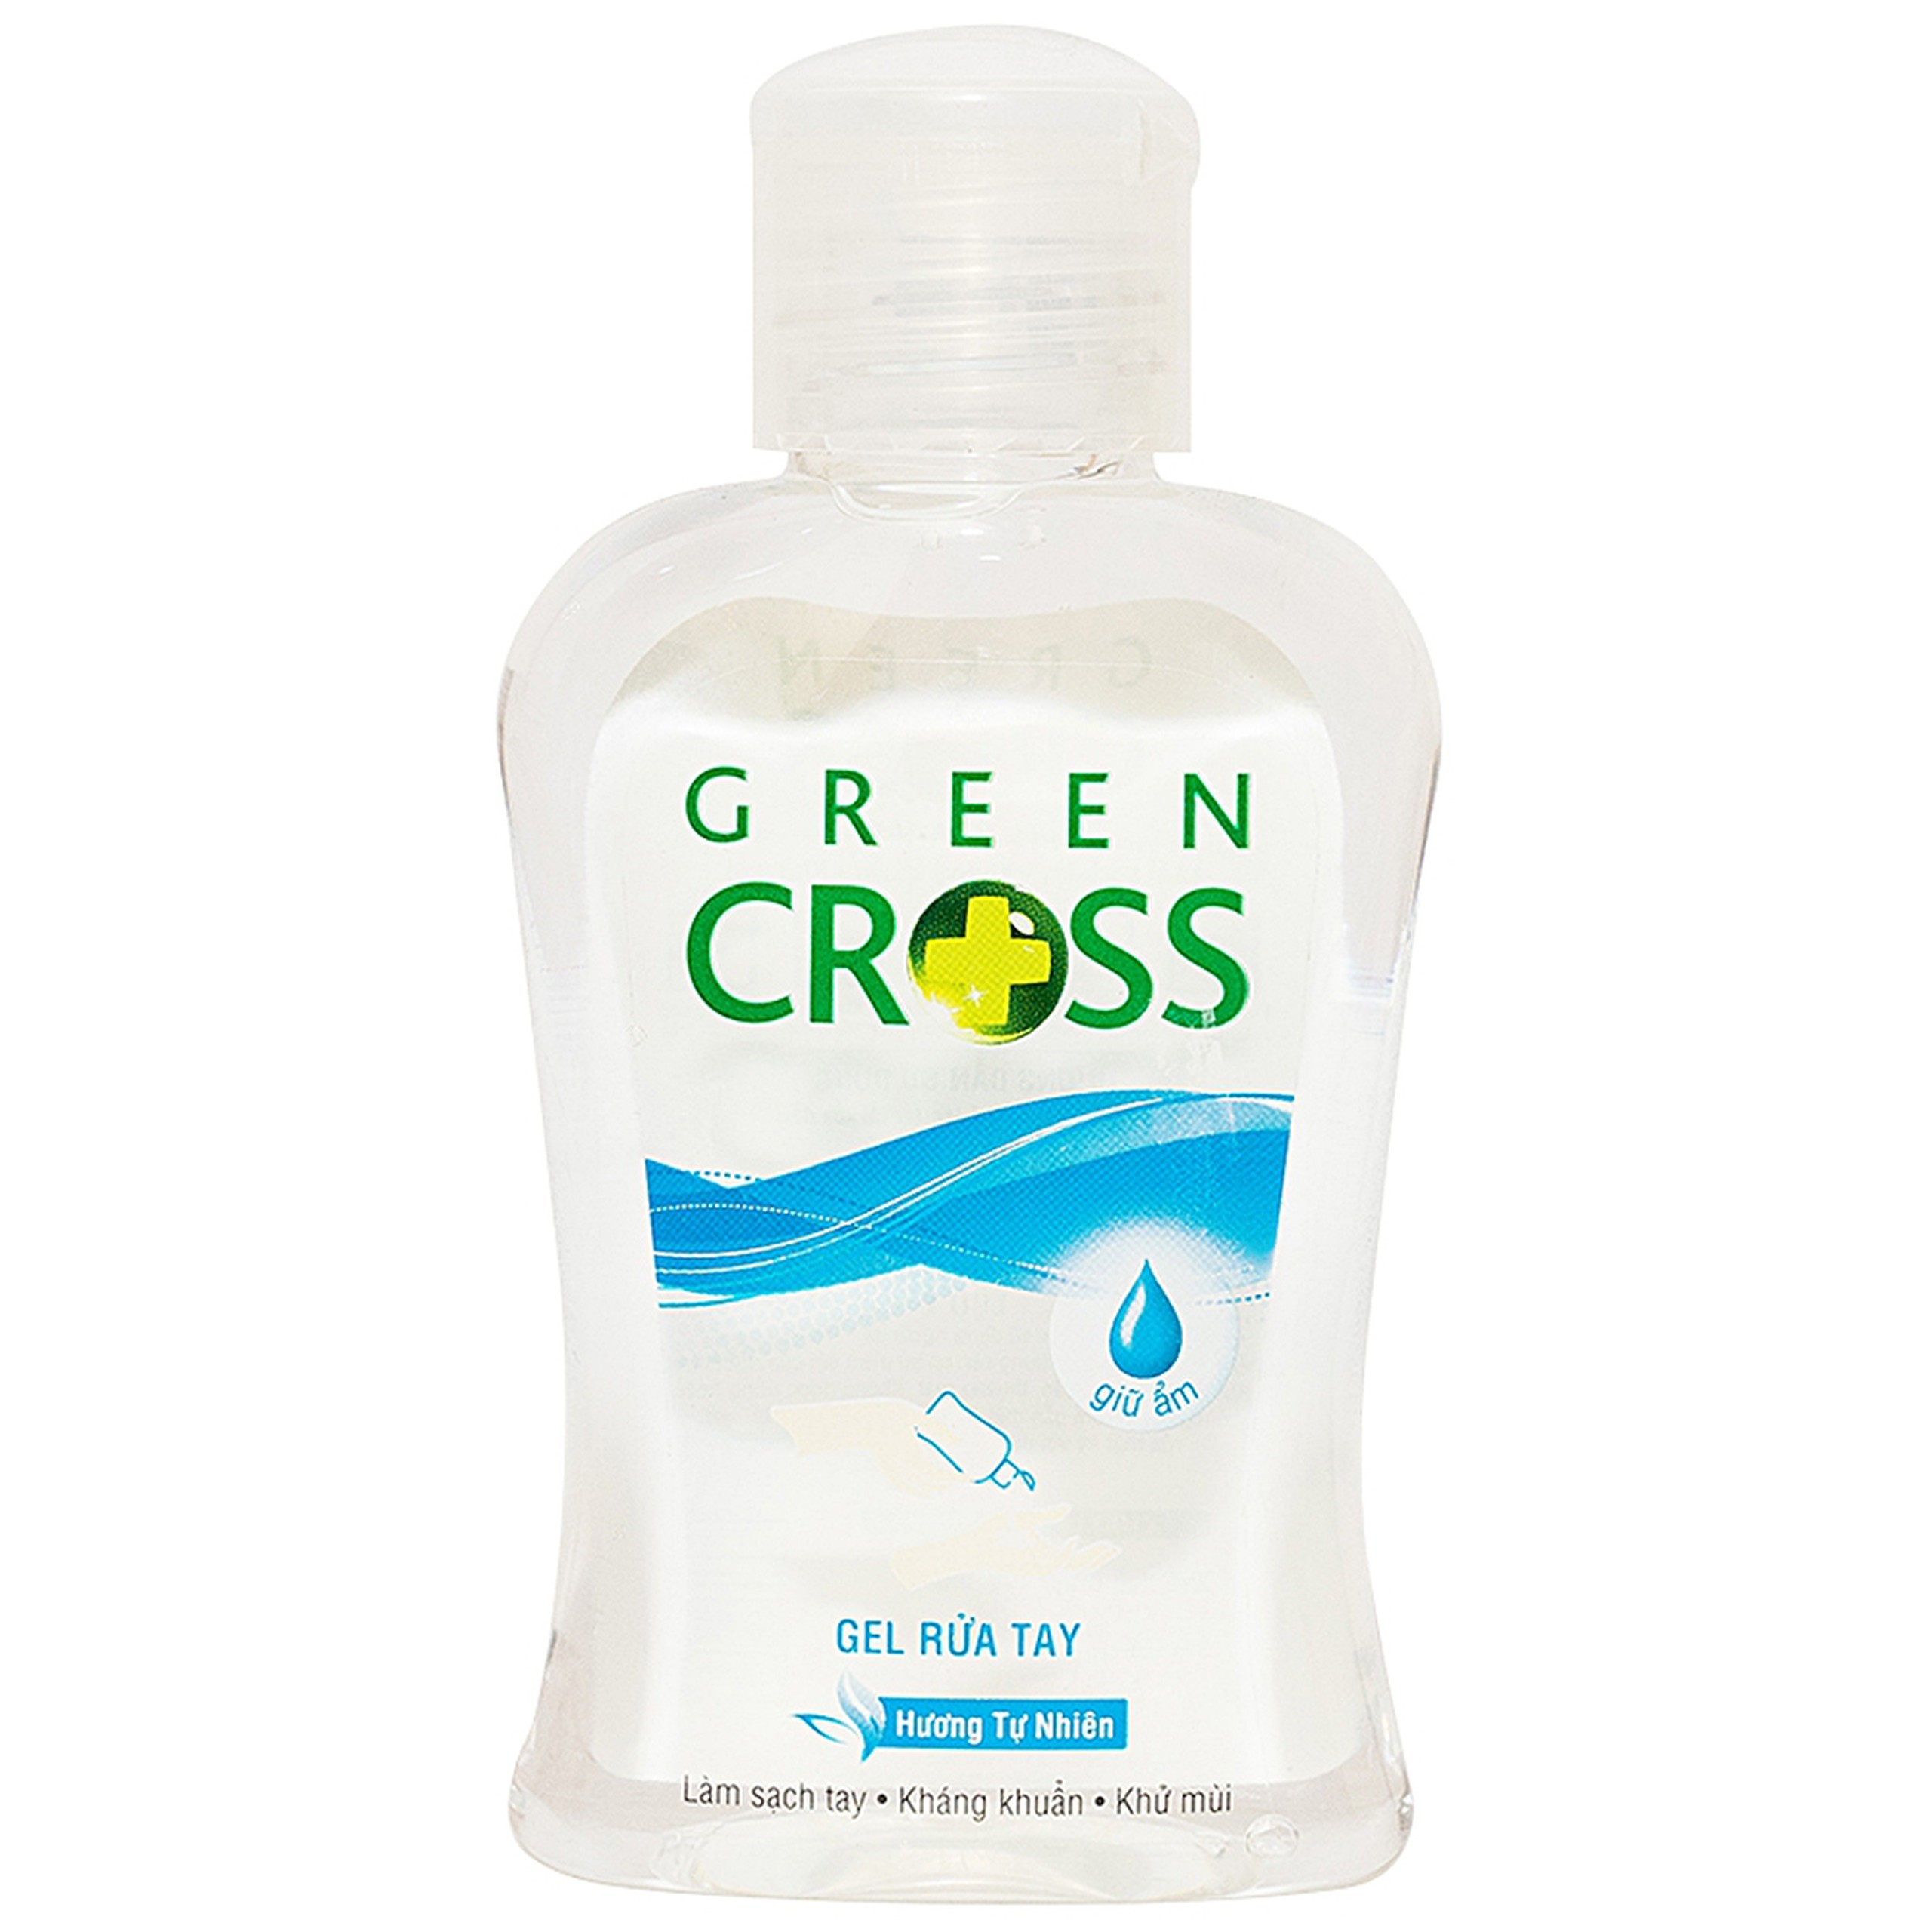 Gel rửa tay Green Cross hương tự nhiên làm sạch tay, kháng khuẩn, khử mùi (100ml)